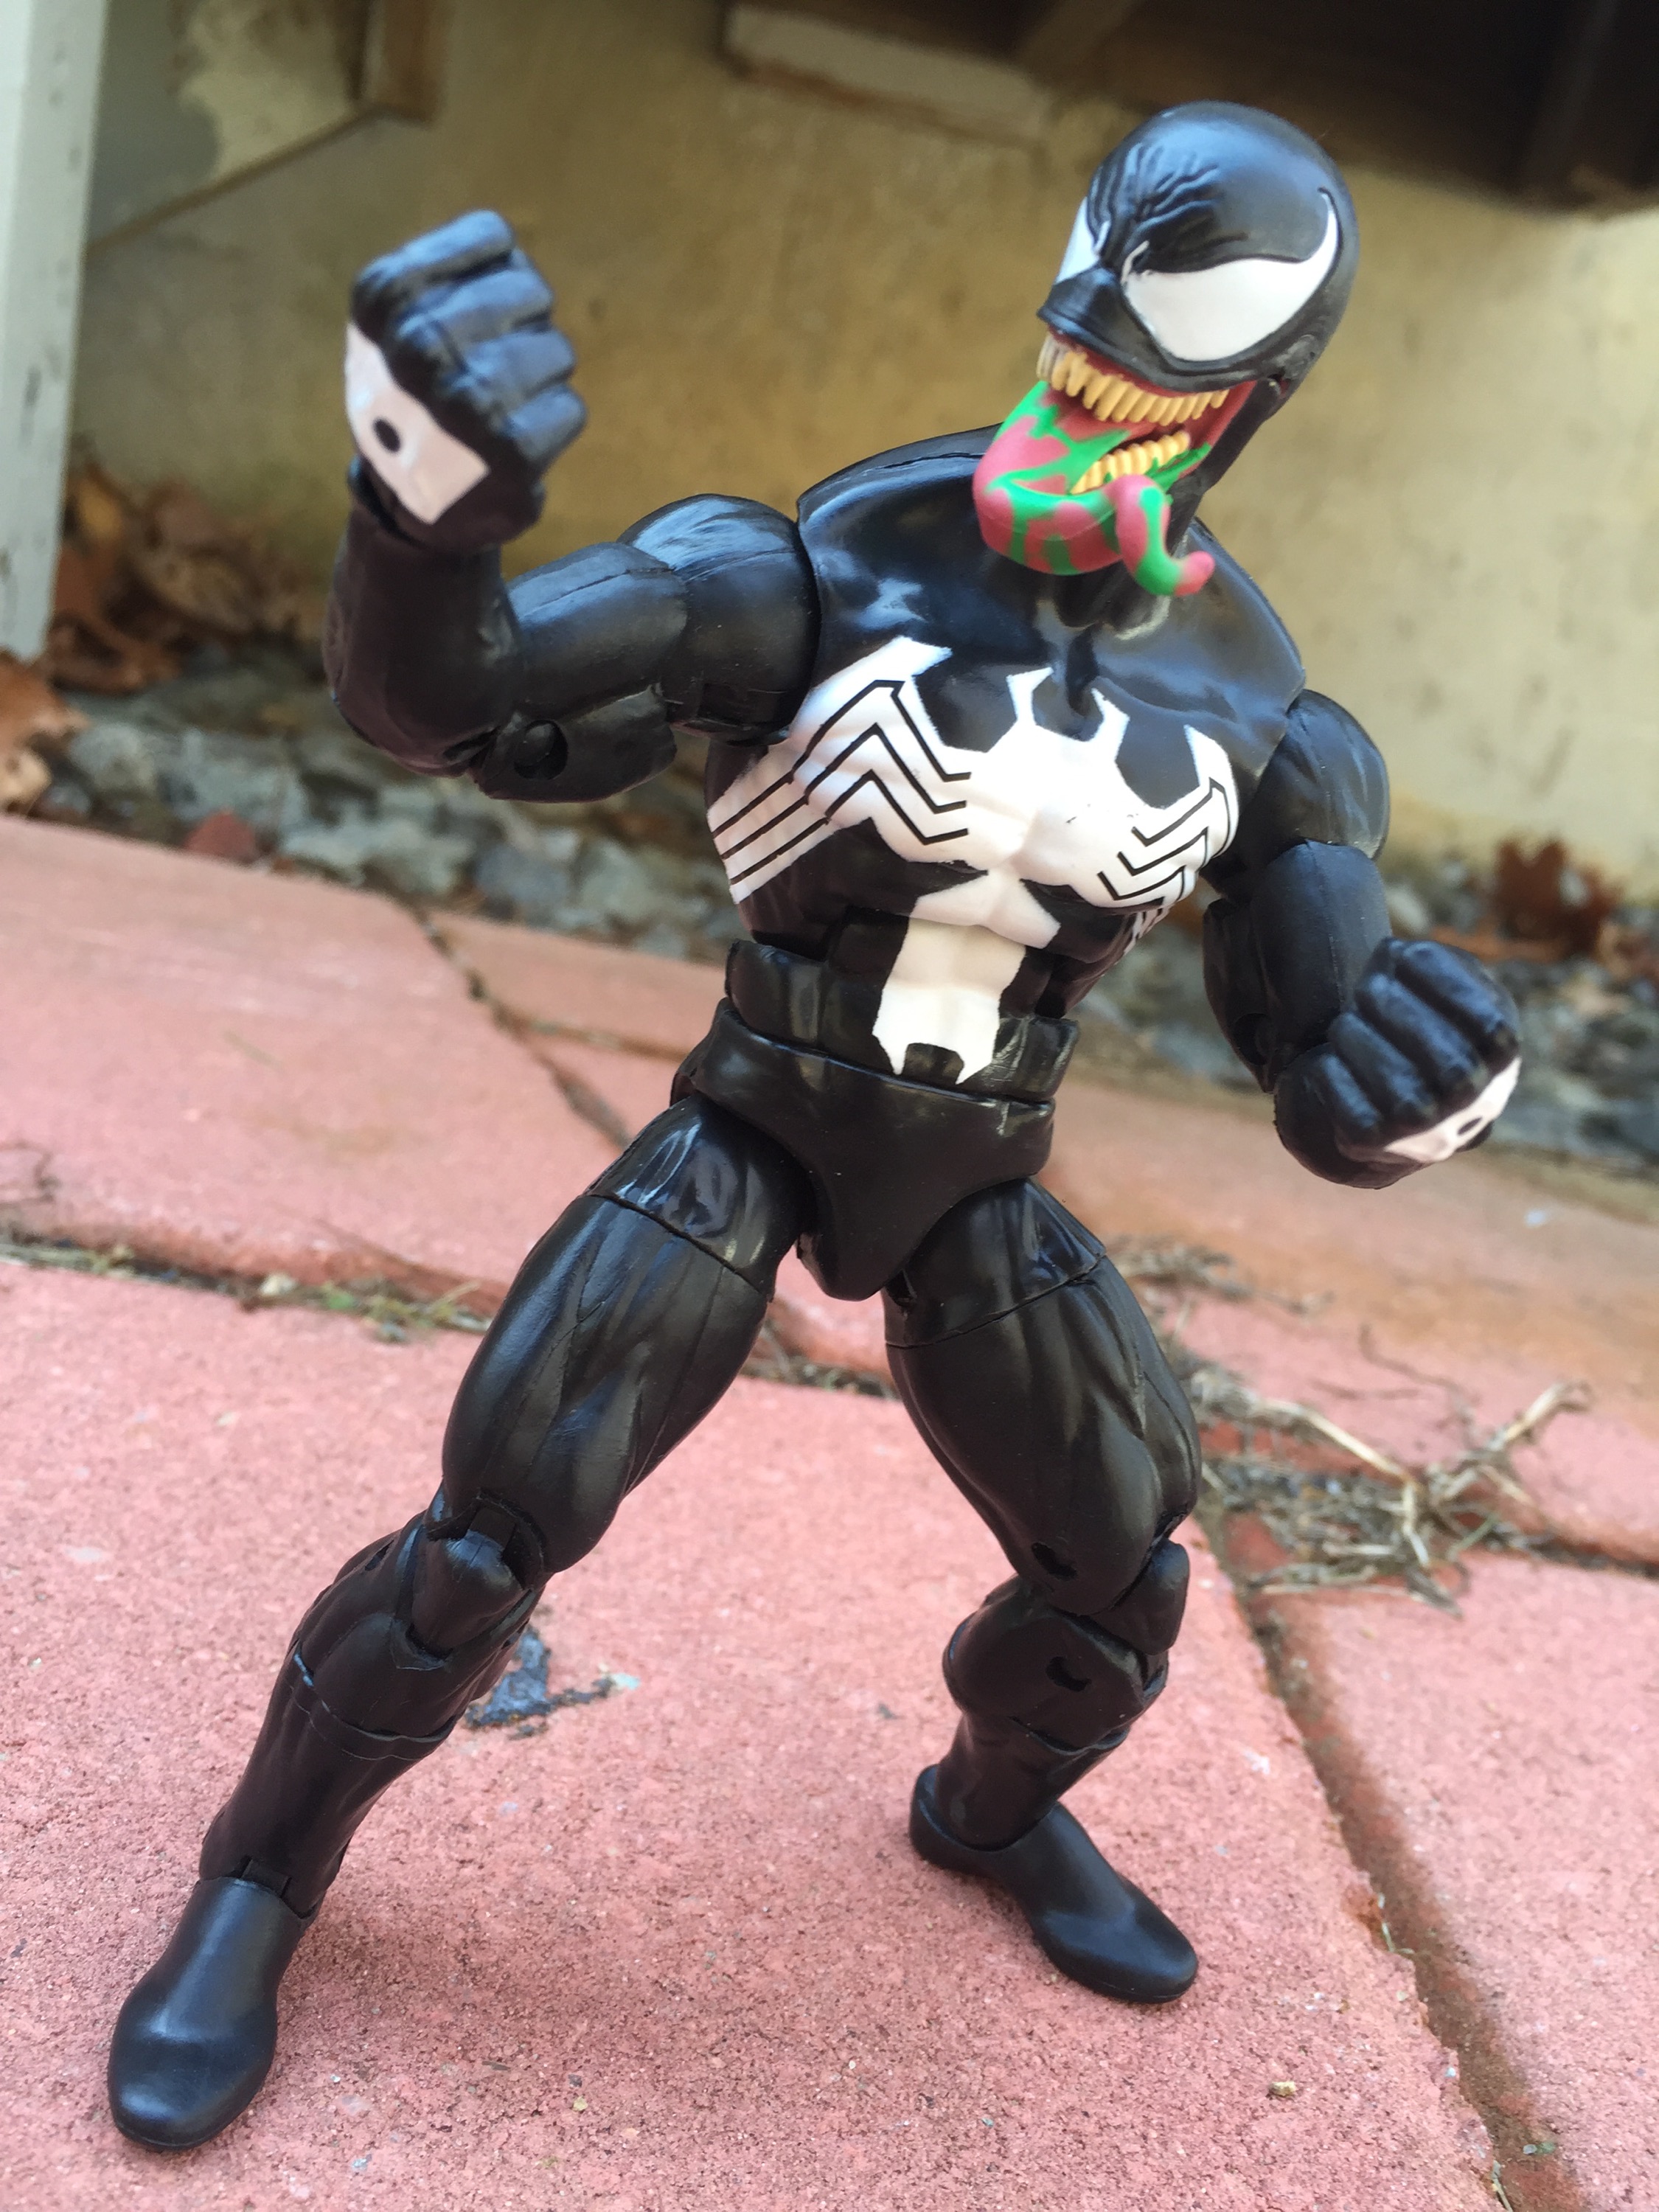 Marvel Legends Venom Review & Photos (Hasbro 2016